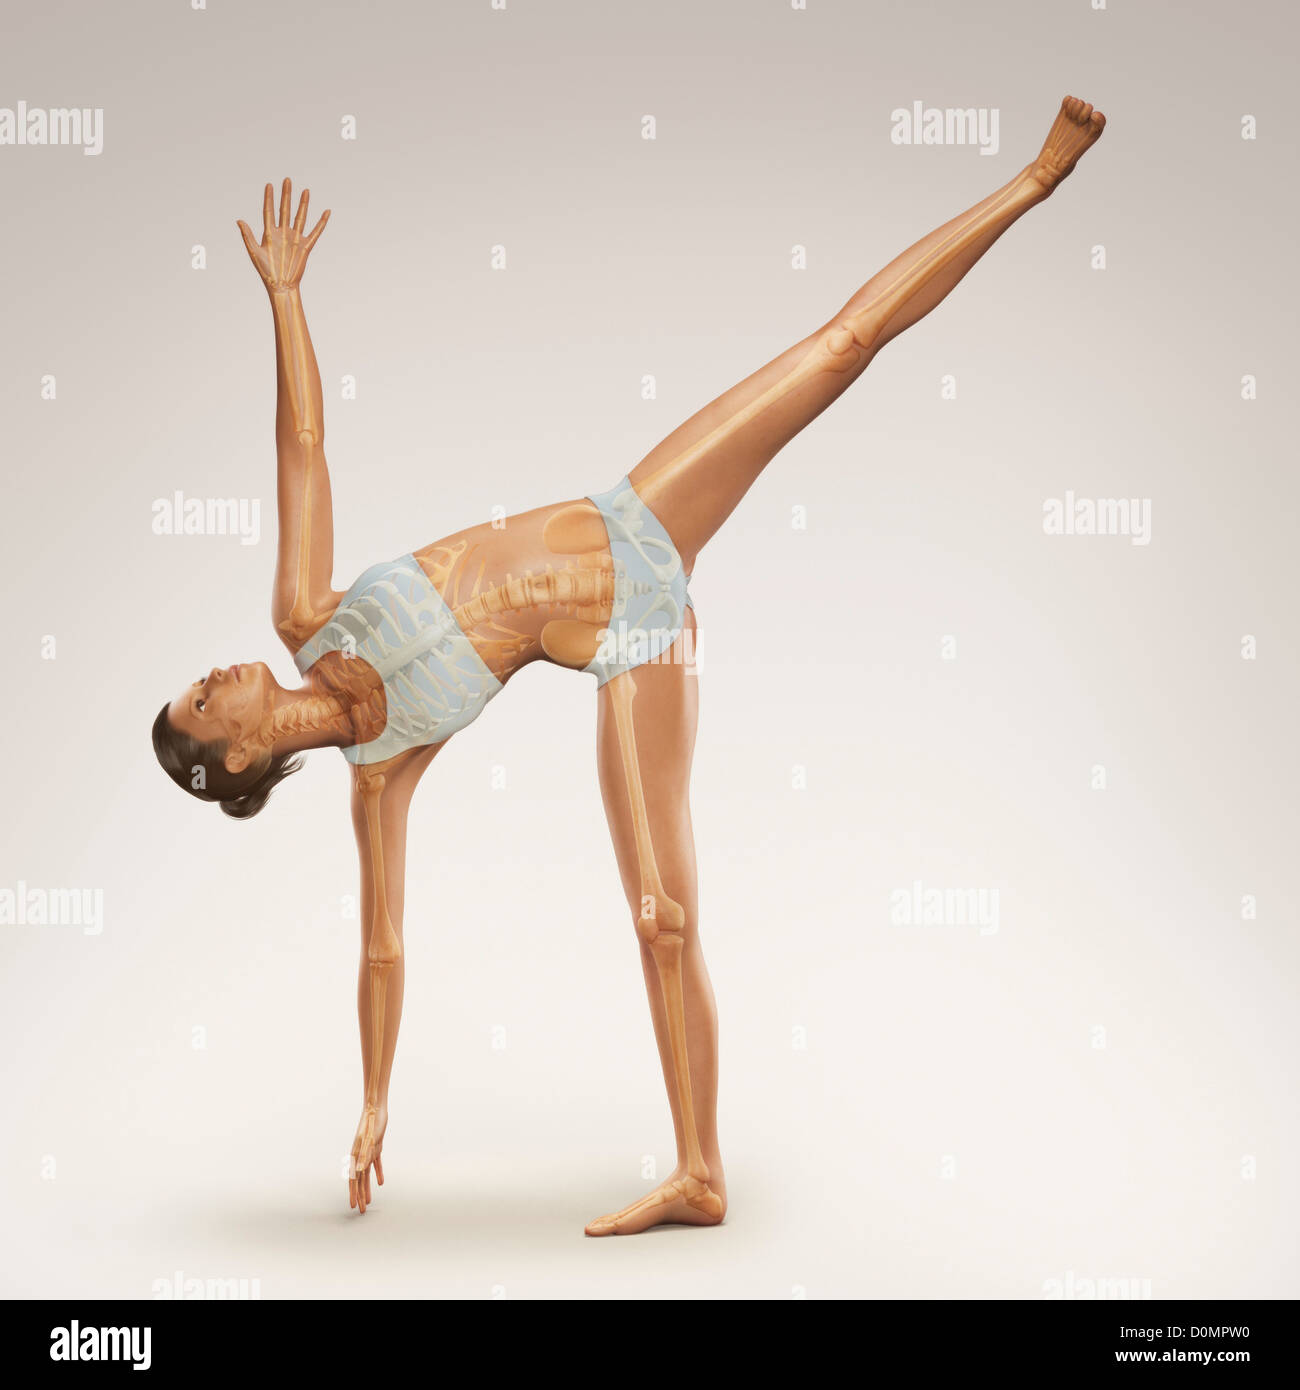 Skelett über einen weiblichen Körper in Halbmond-Pose zeigt die Skelette Ausrichtung von diesem bestimmten Yogastellung geschichtet. Stockfoto